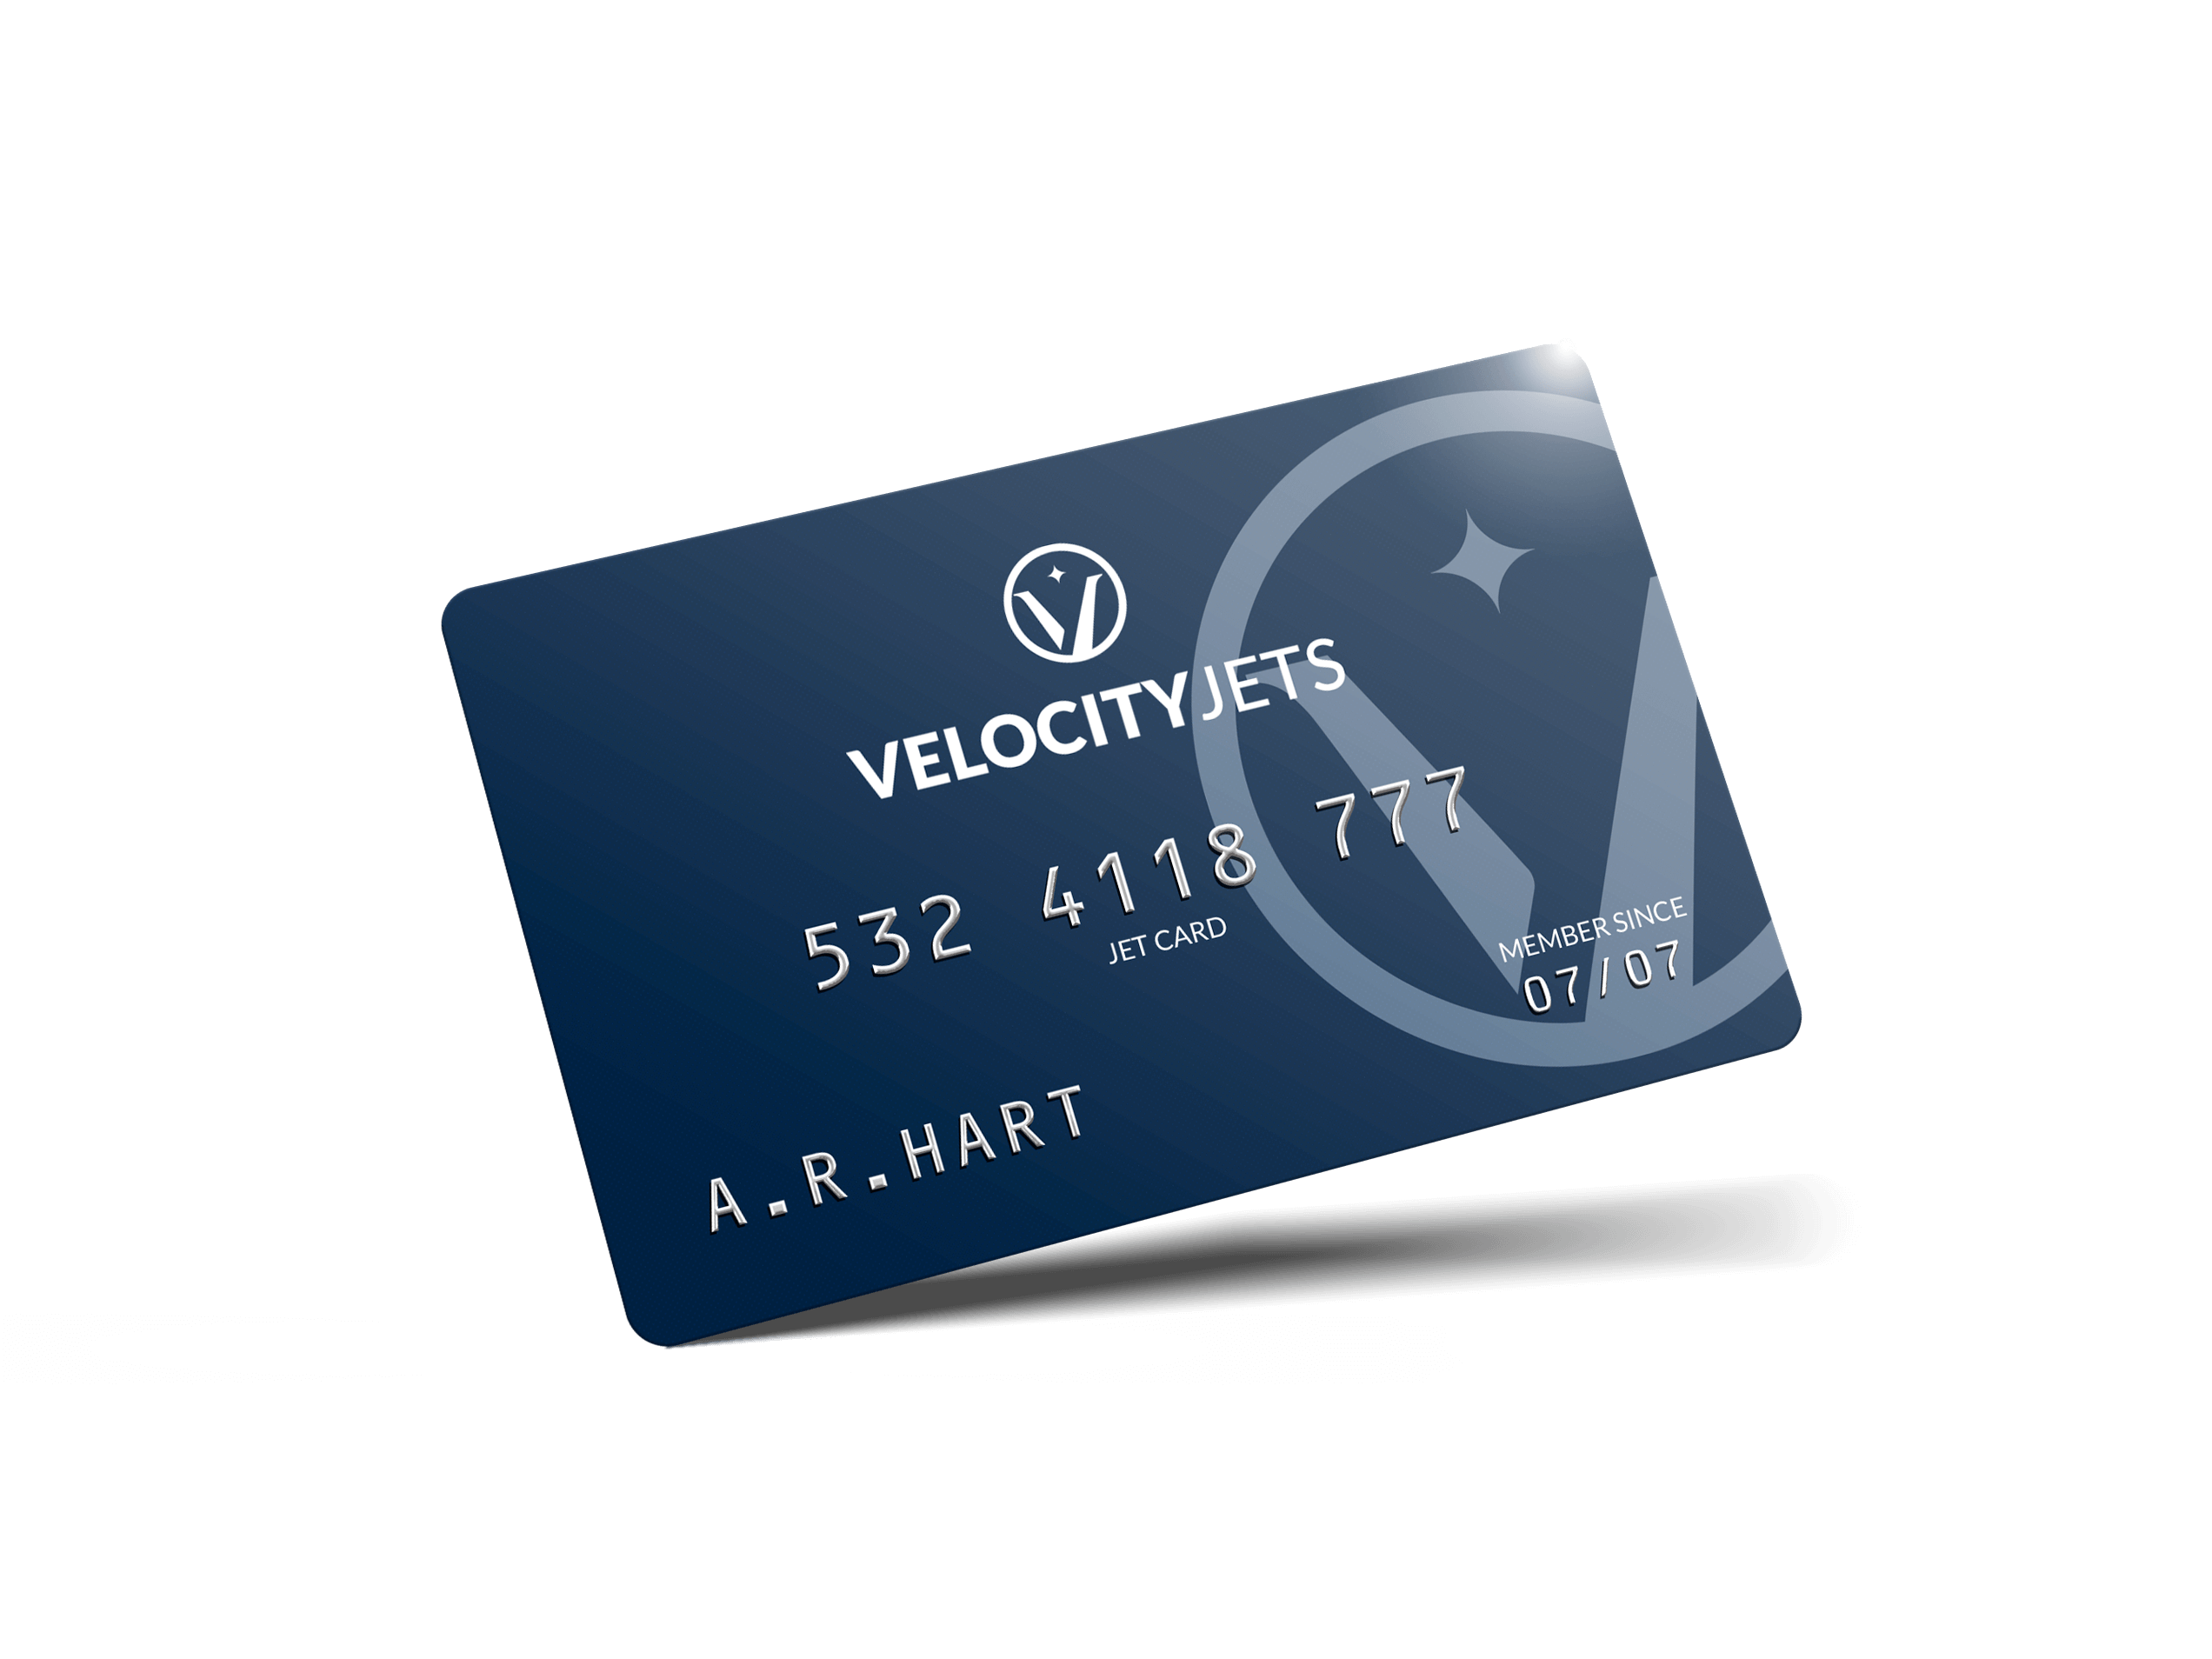 Jet Card by VelocityJets